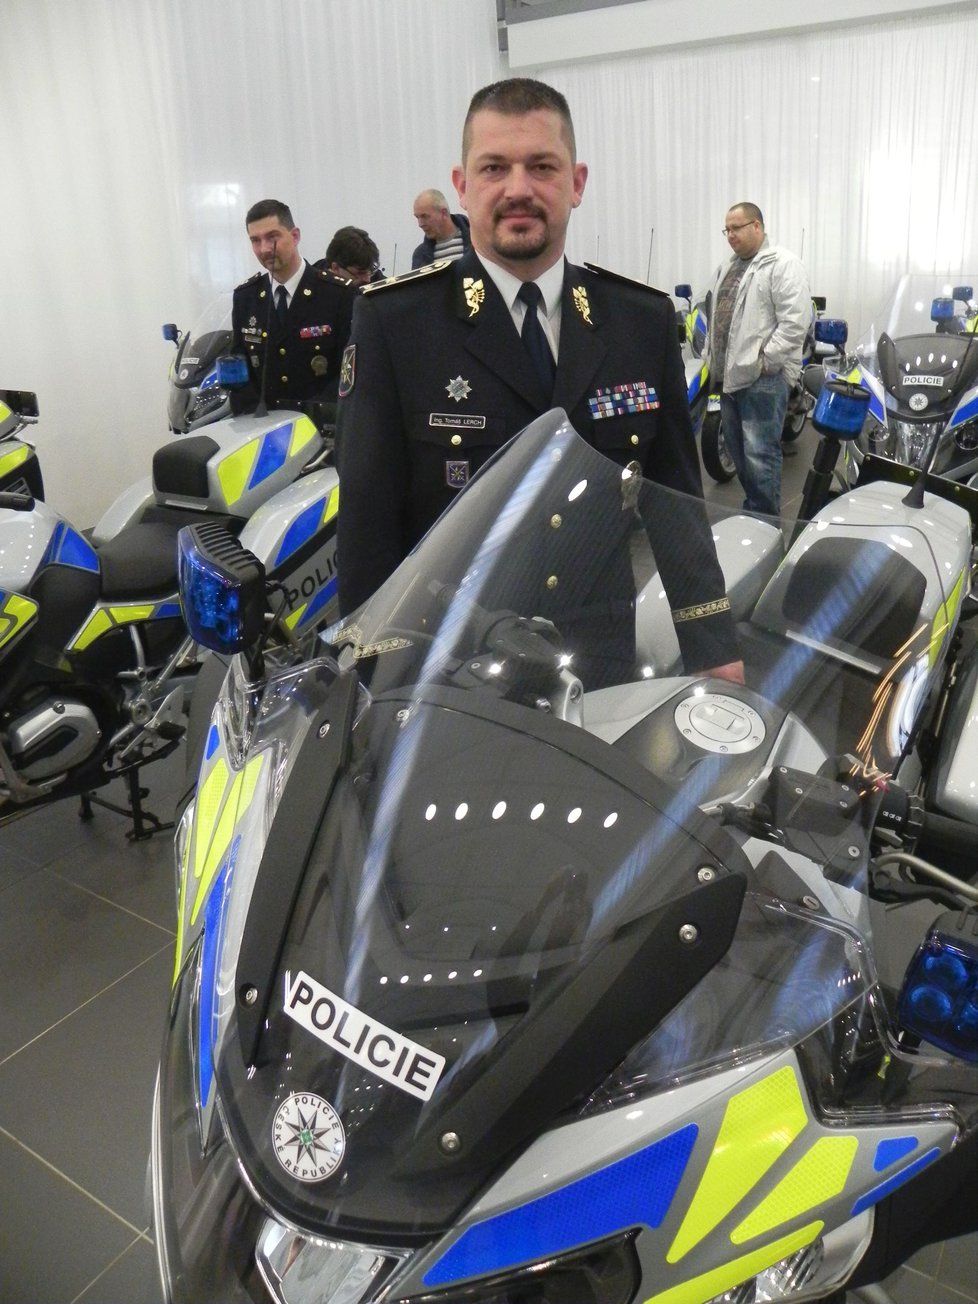 Ředitel dopravní policie Tomáš Lerch.